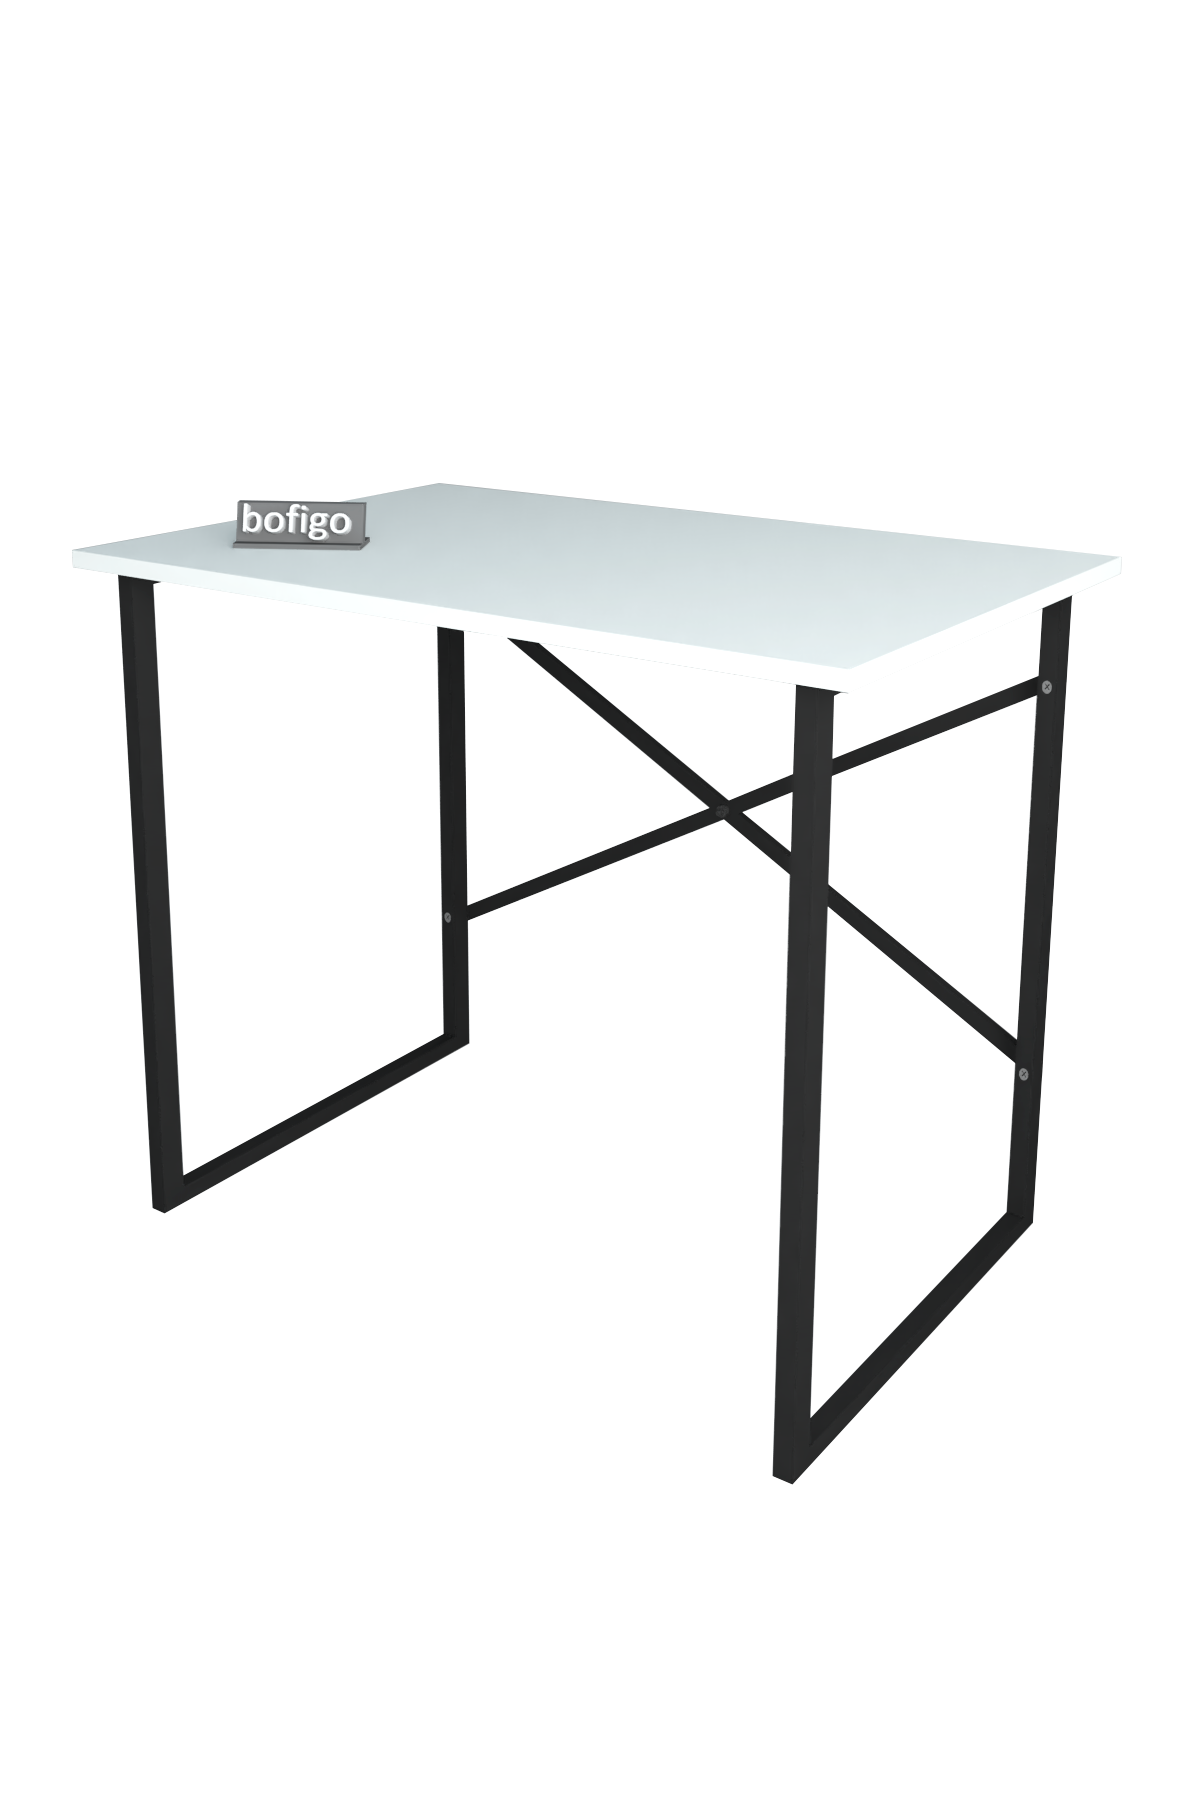 Bofigo Desk 60x90 cm White